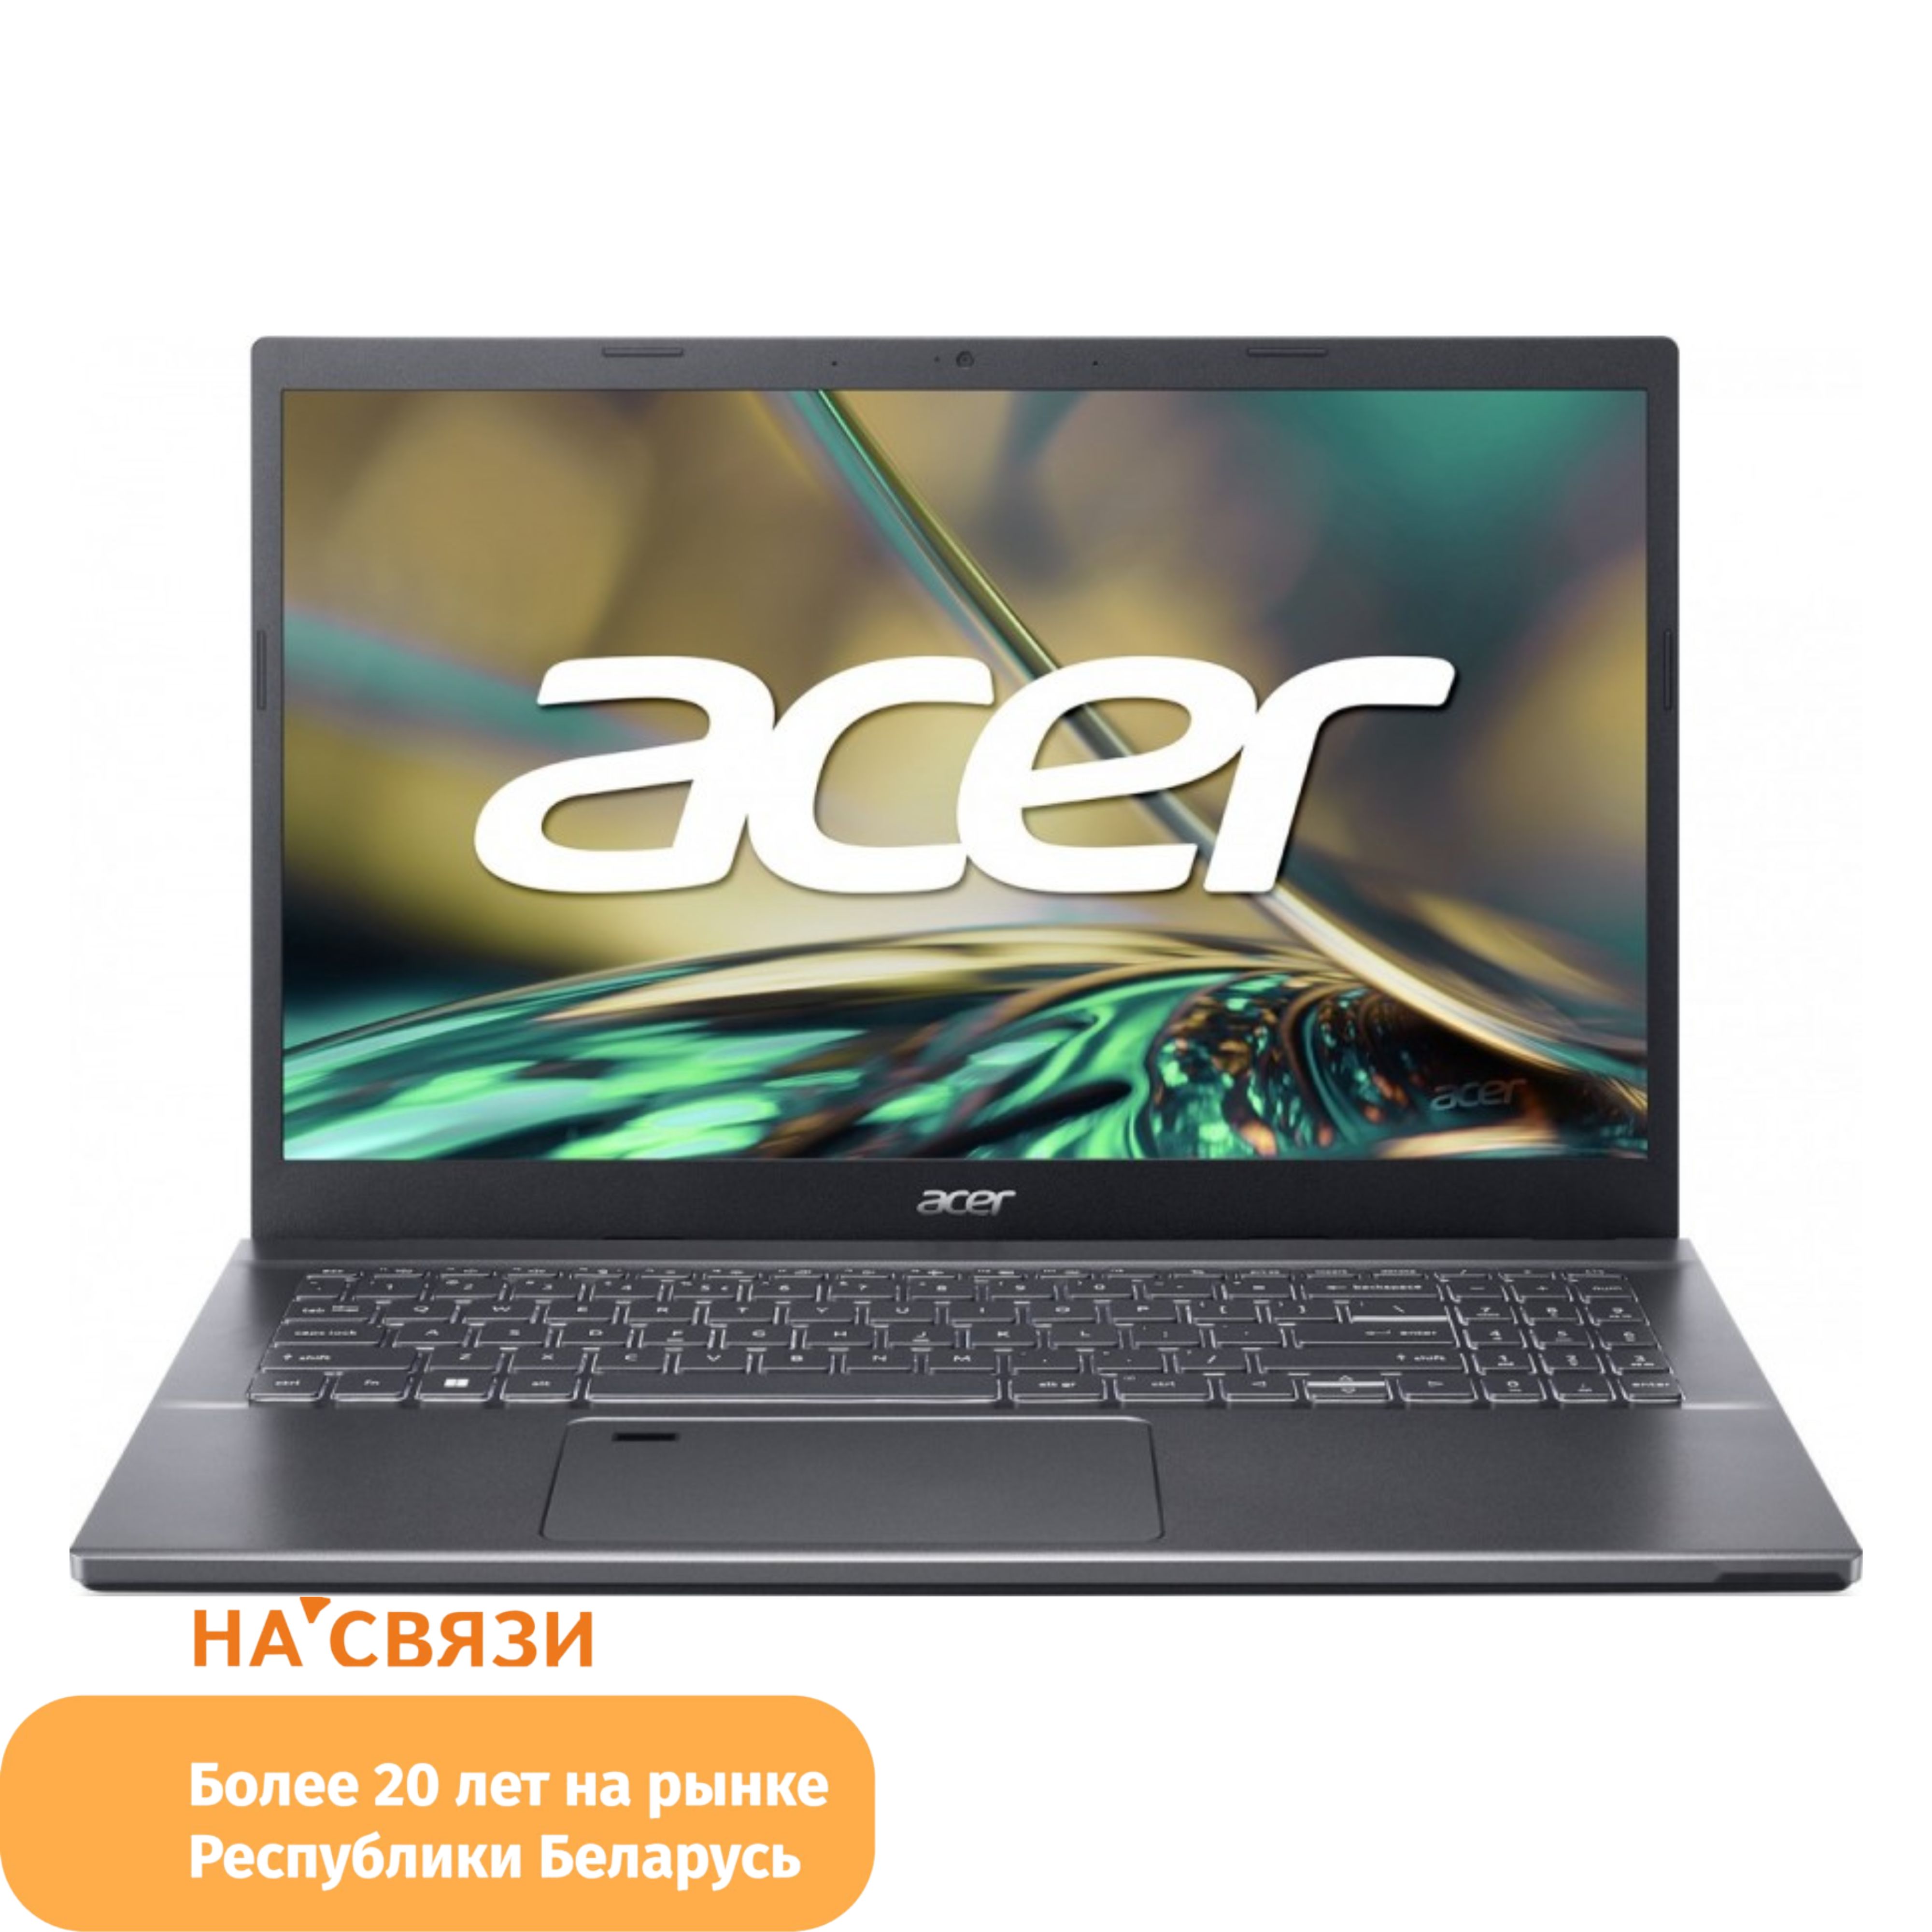 Acer aspire a515 57 52zz. Ноутбук Acer Aspire a315. Acer Aspire 5 a515-57. Acer Aspire 5. Ноутбук Acer Aspire 5 a515-57-52zz NX.kn3cd.003.